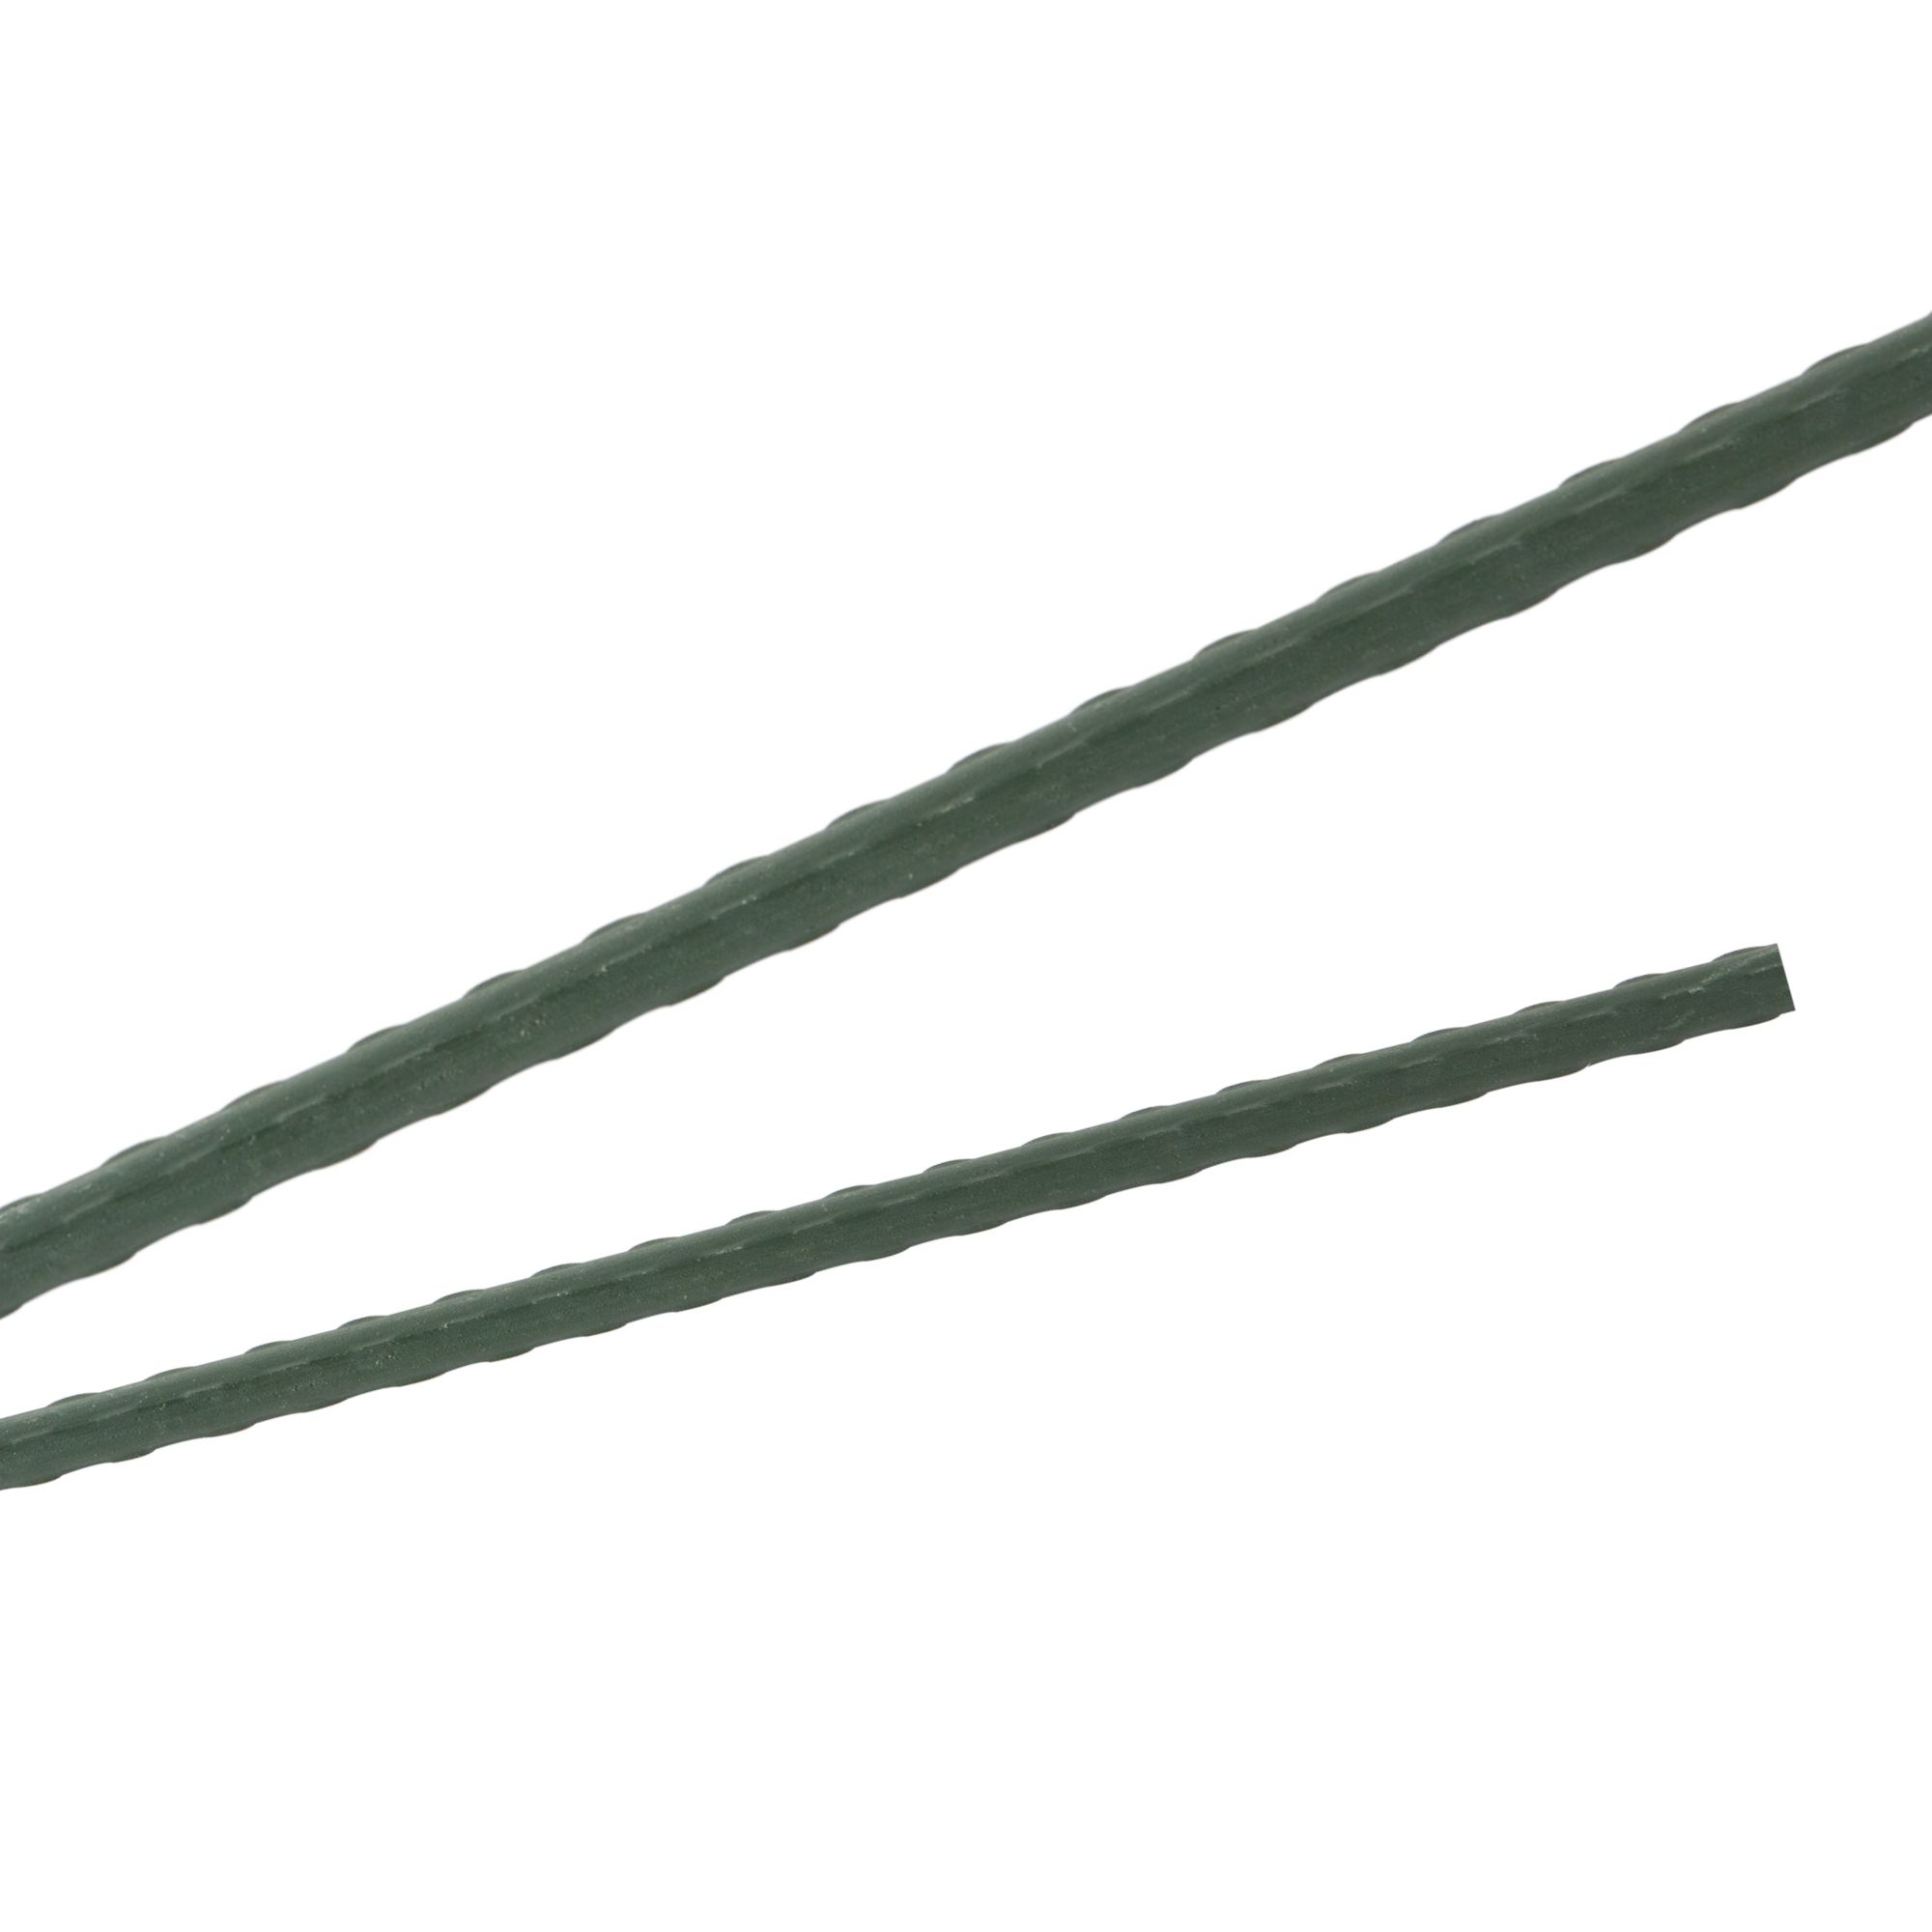 Tyč podpěrná, 11mm, 180cm, kov+PVC, zelená 0.139000 Kg GIGA Sklad20 45656 172